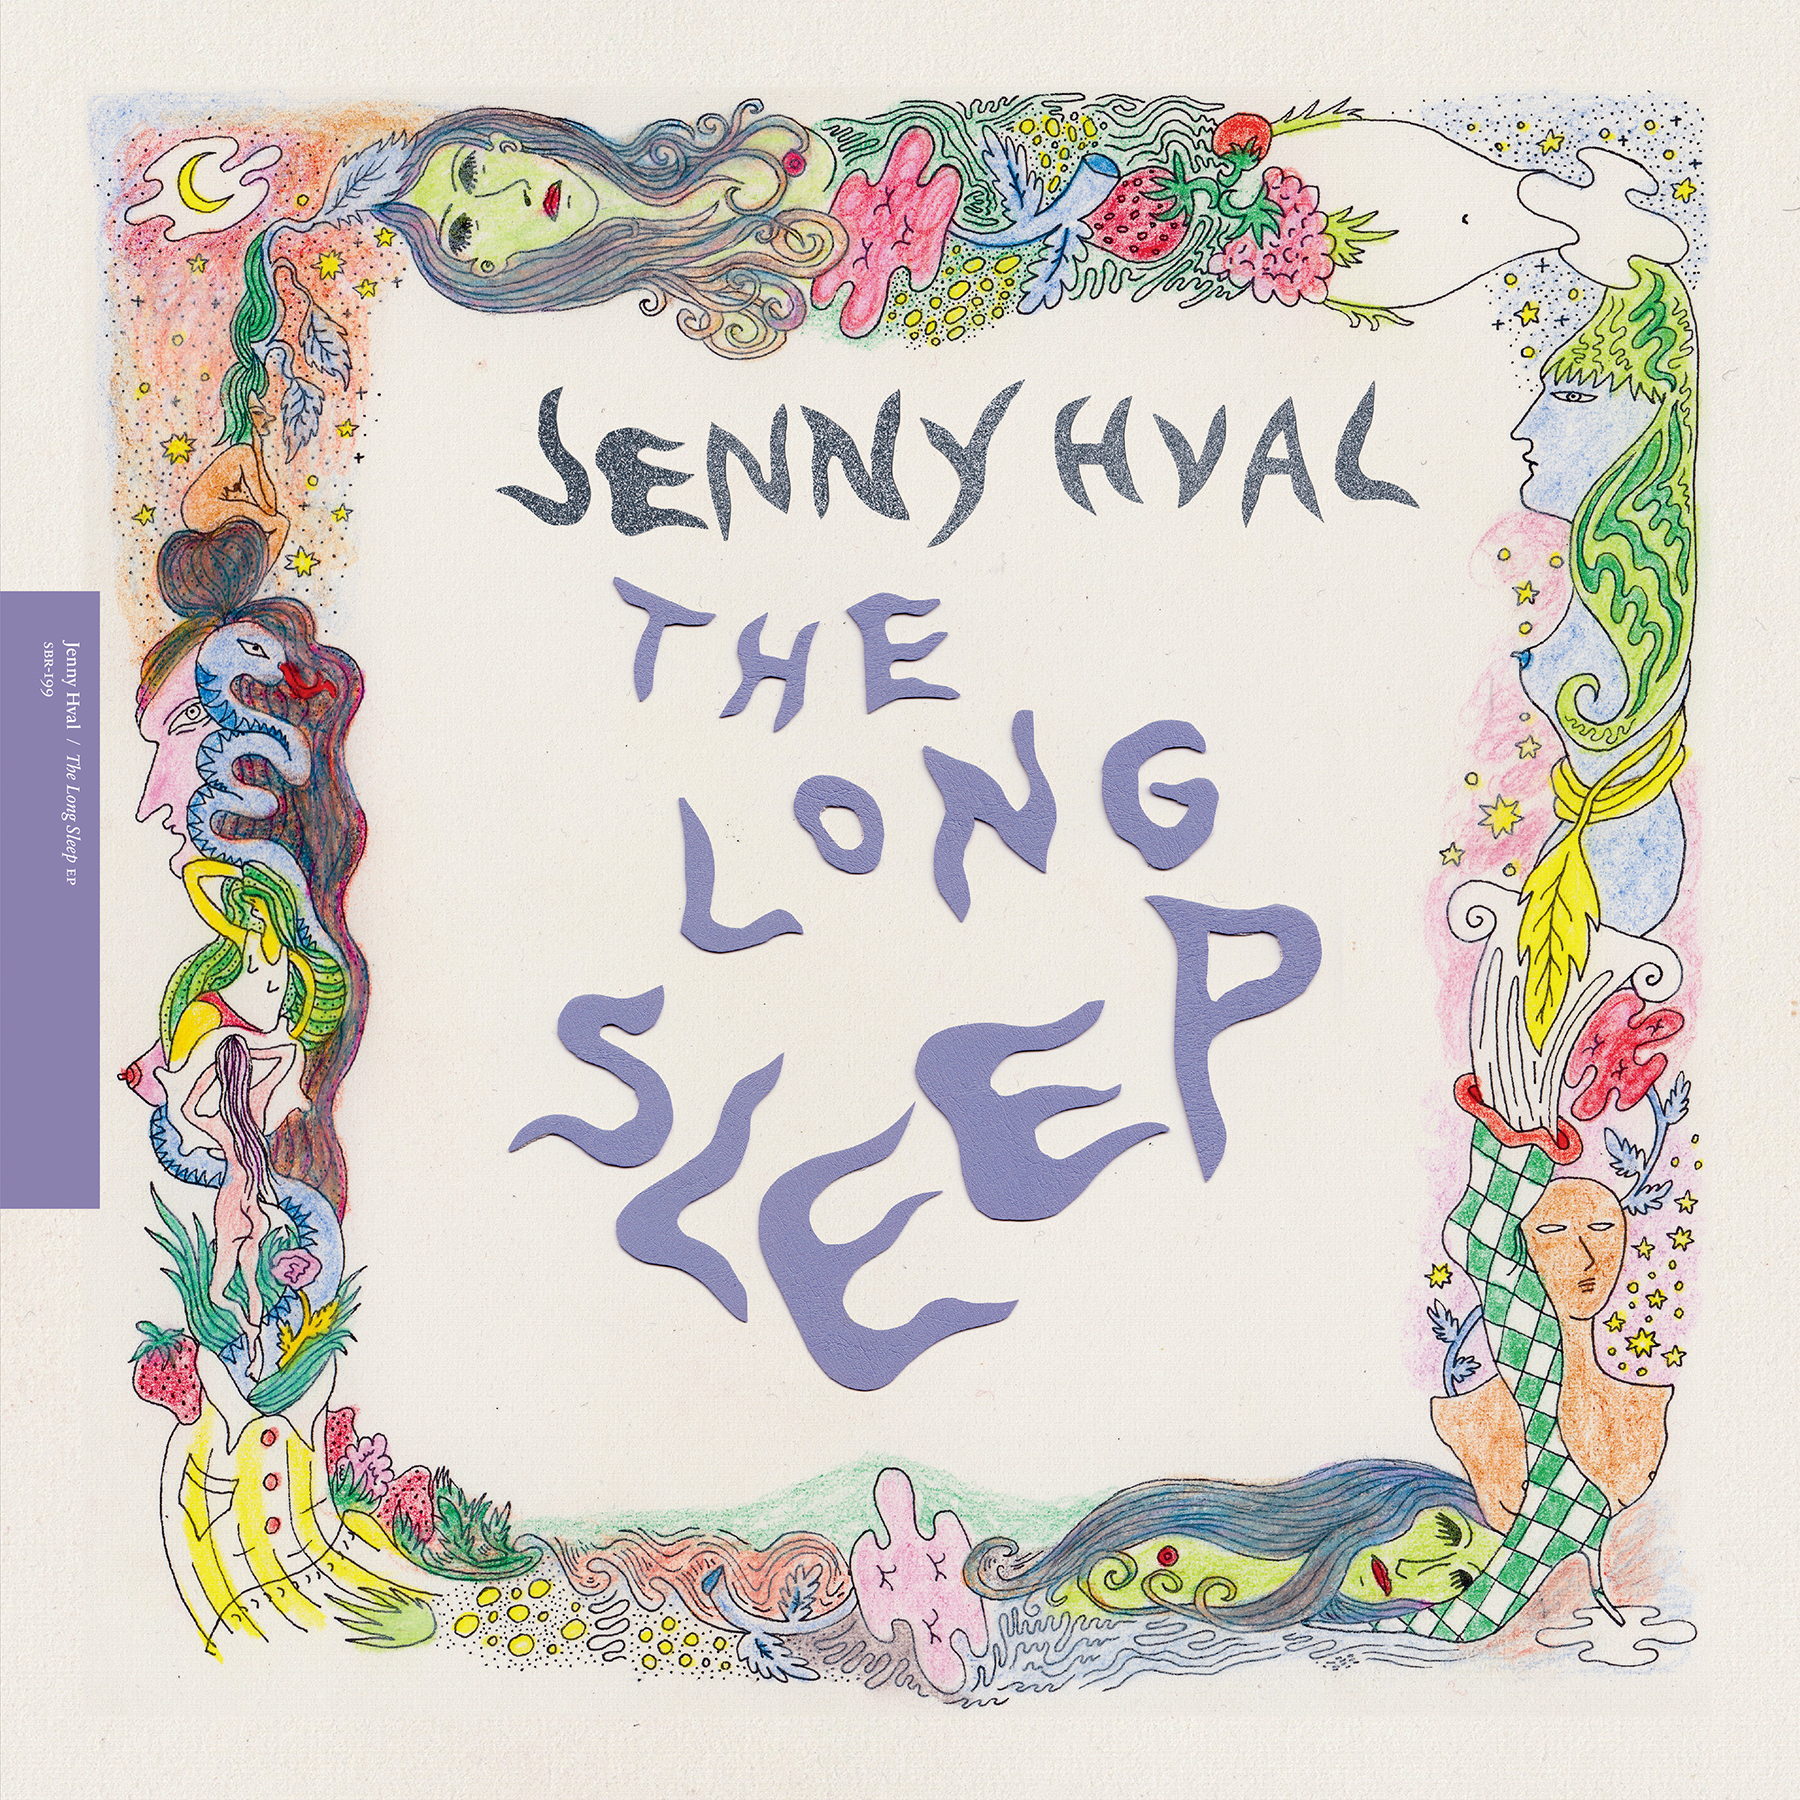 Jenny Hval - The Long Sleep (Limited Purple viny